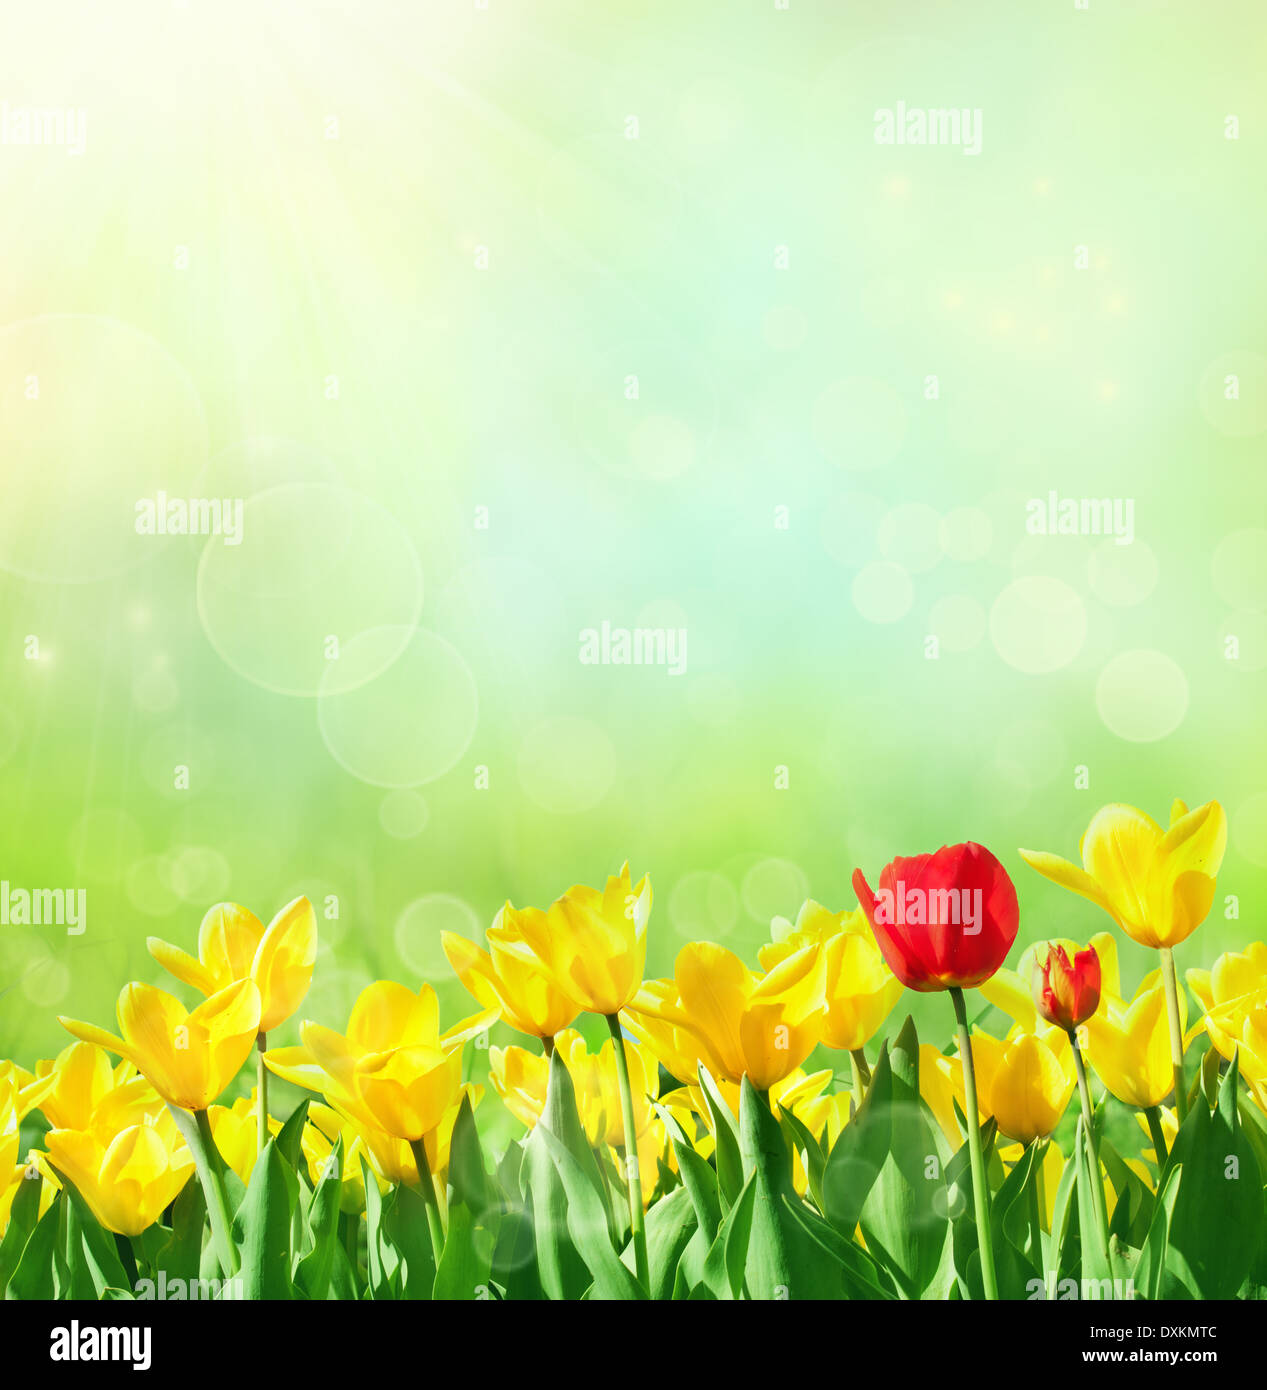 Design flowers background. Spring or summer floral nature ...